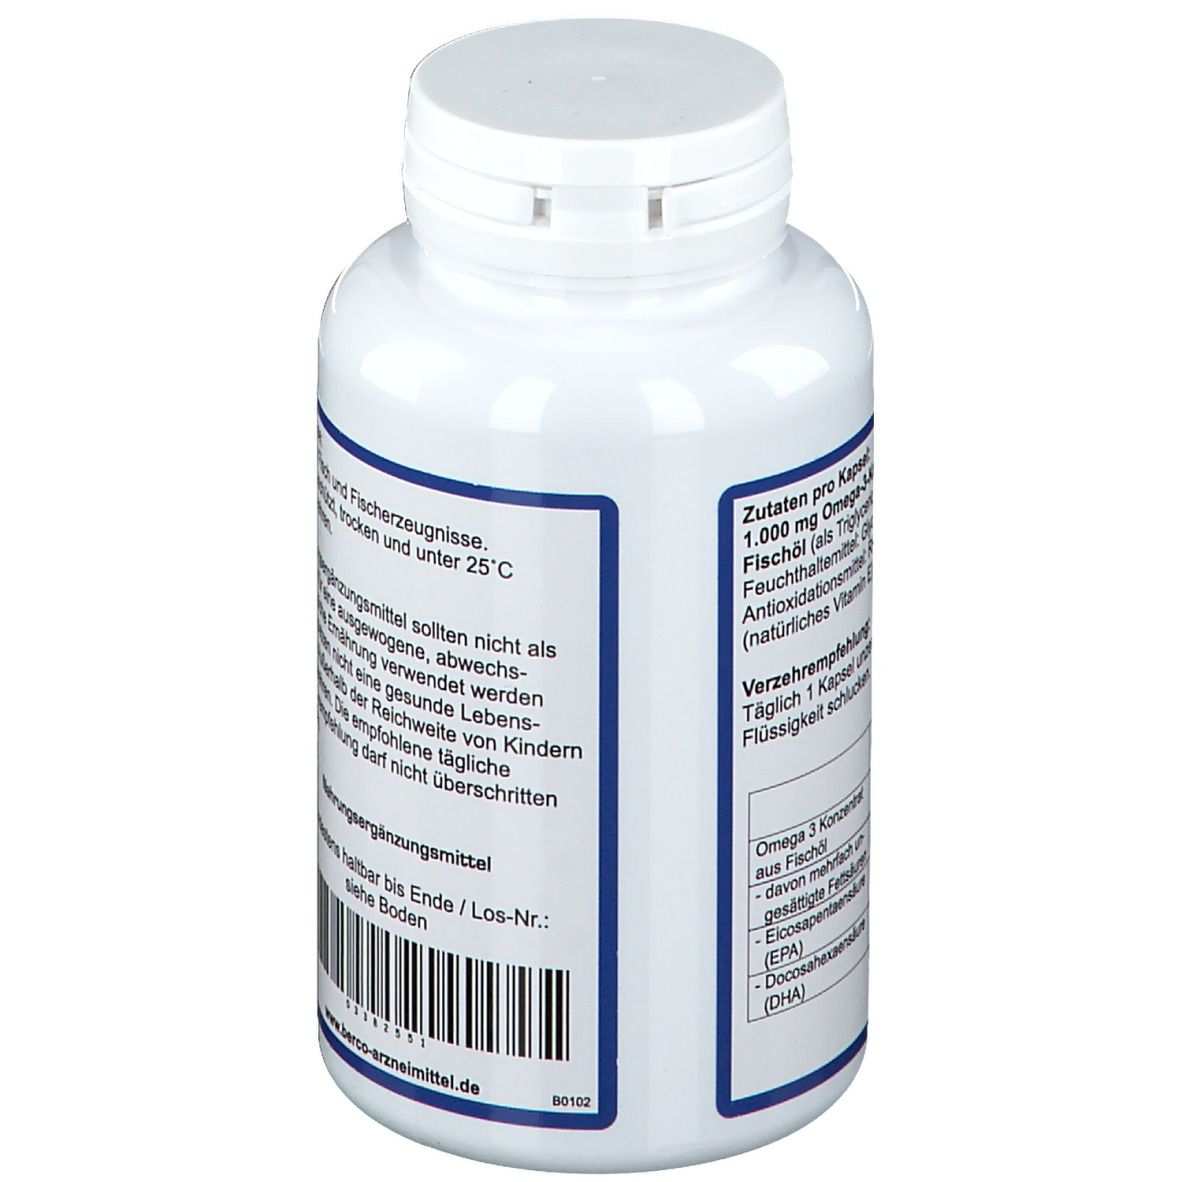 Omega-3 Berco 1.000 mg